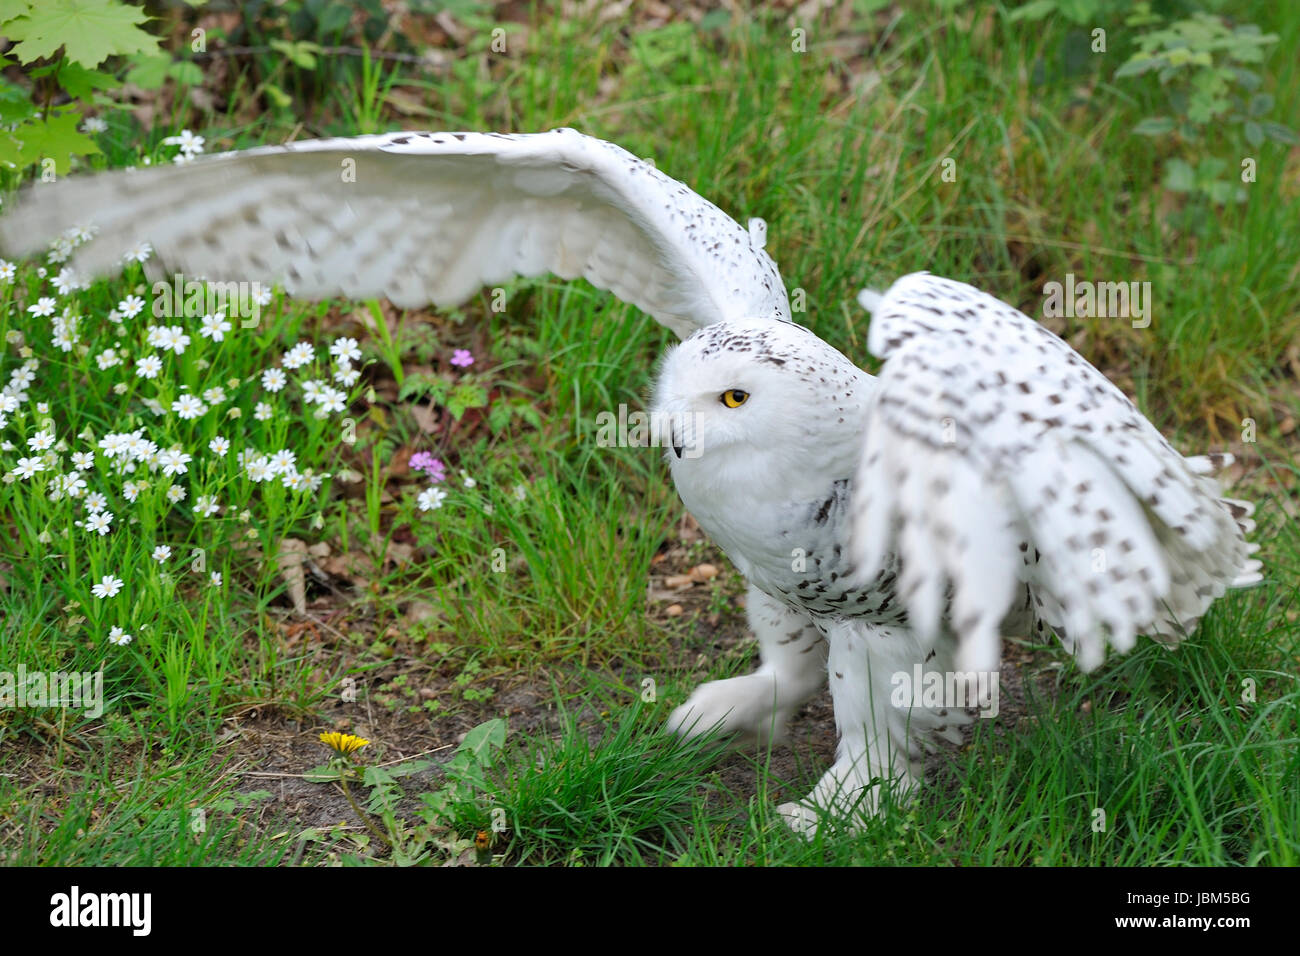 Snowy Owl (Bubo scandiacus, Nyctea scandiaca), Regenstein,Blankenburg, Sachsen Anhalt, Germany, North Europe Stock Photo